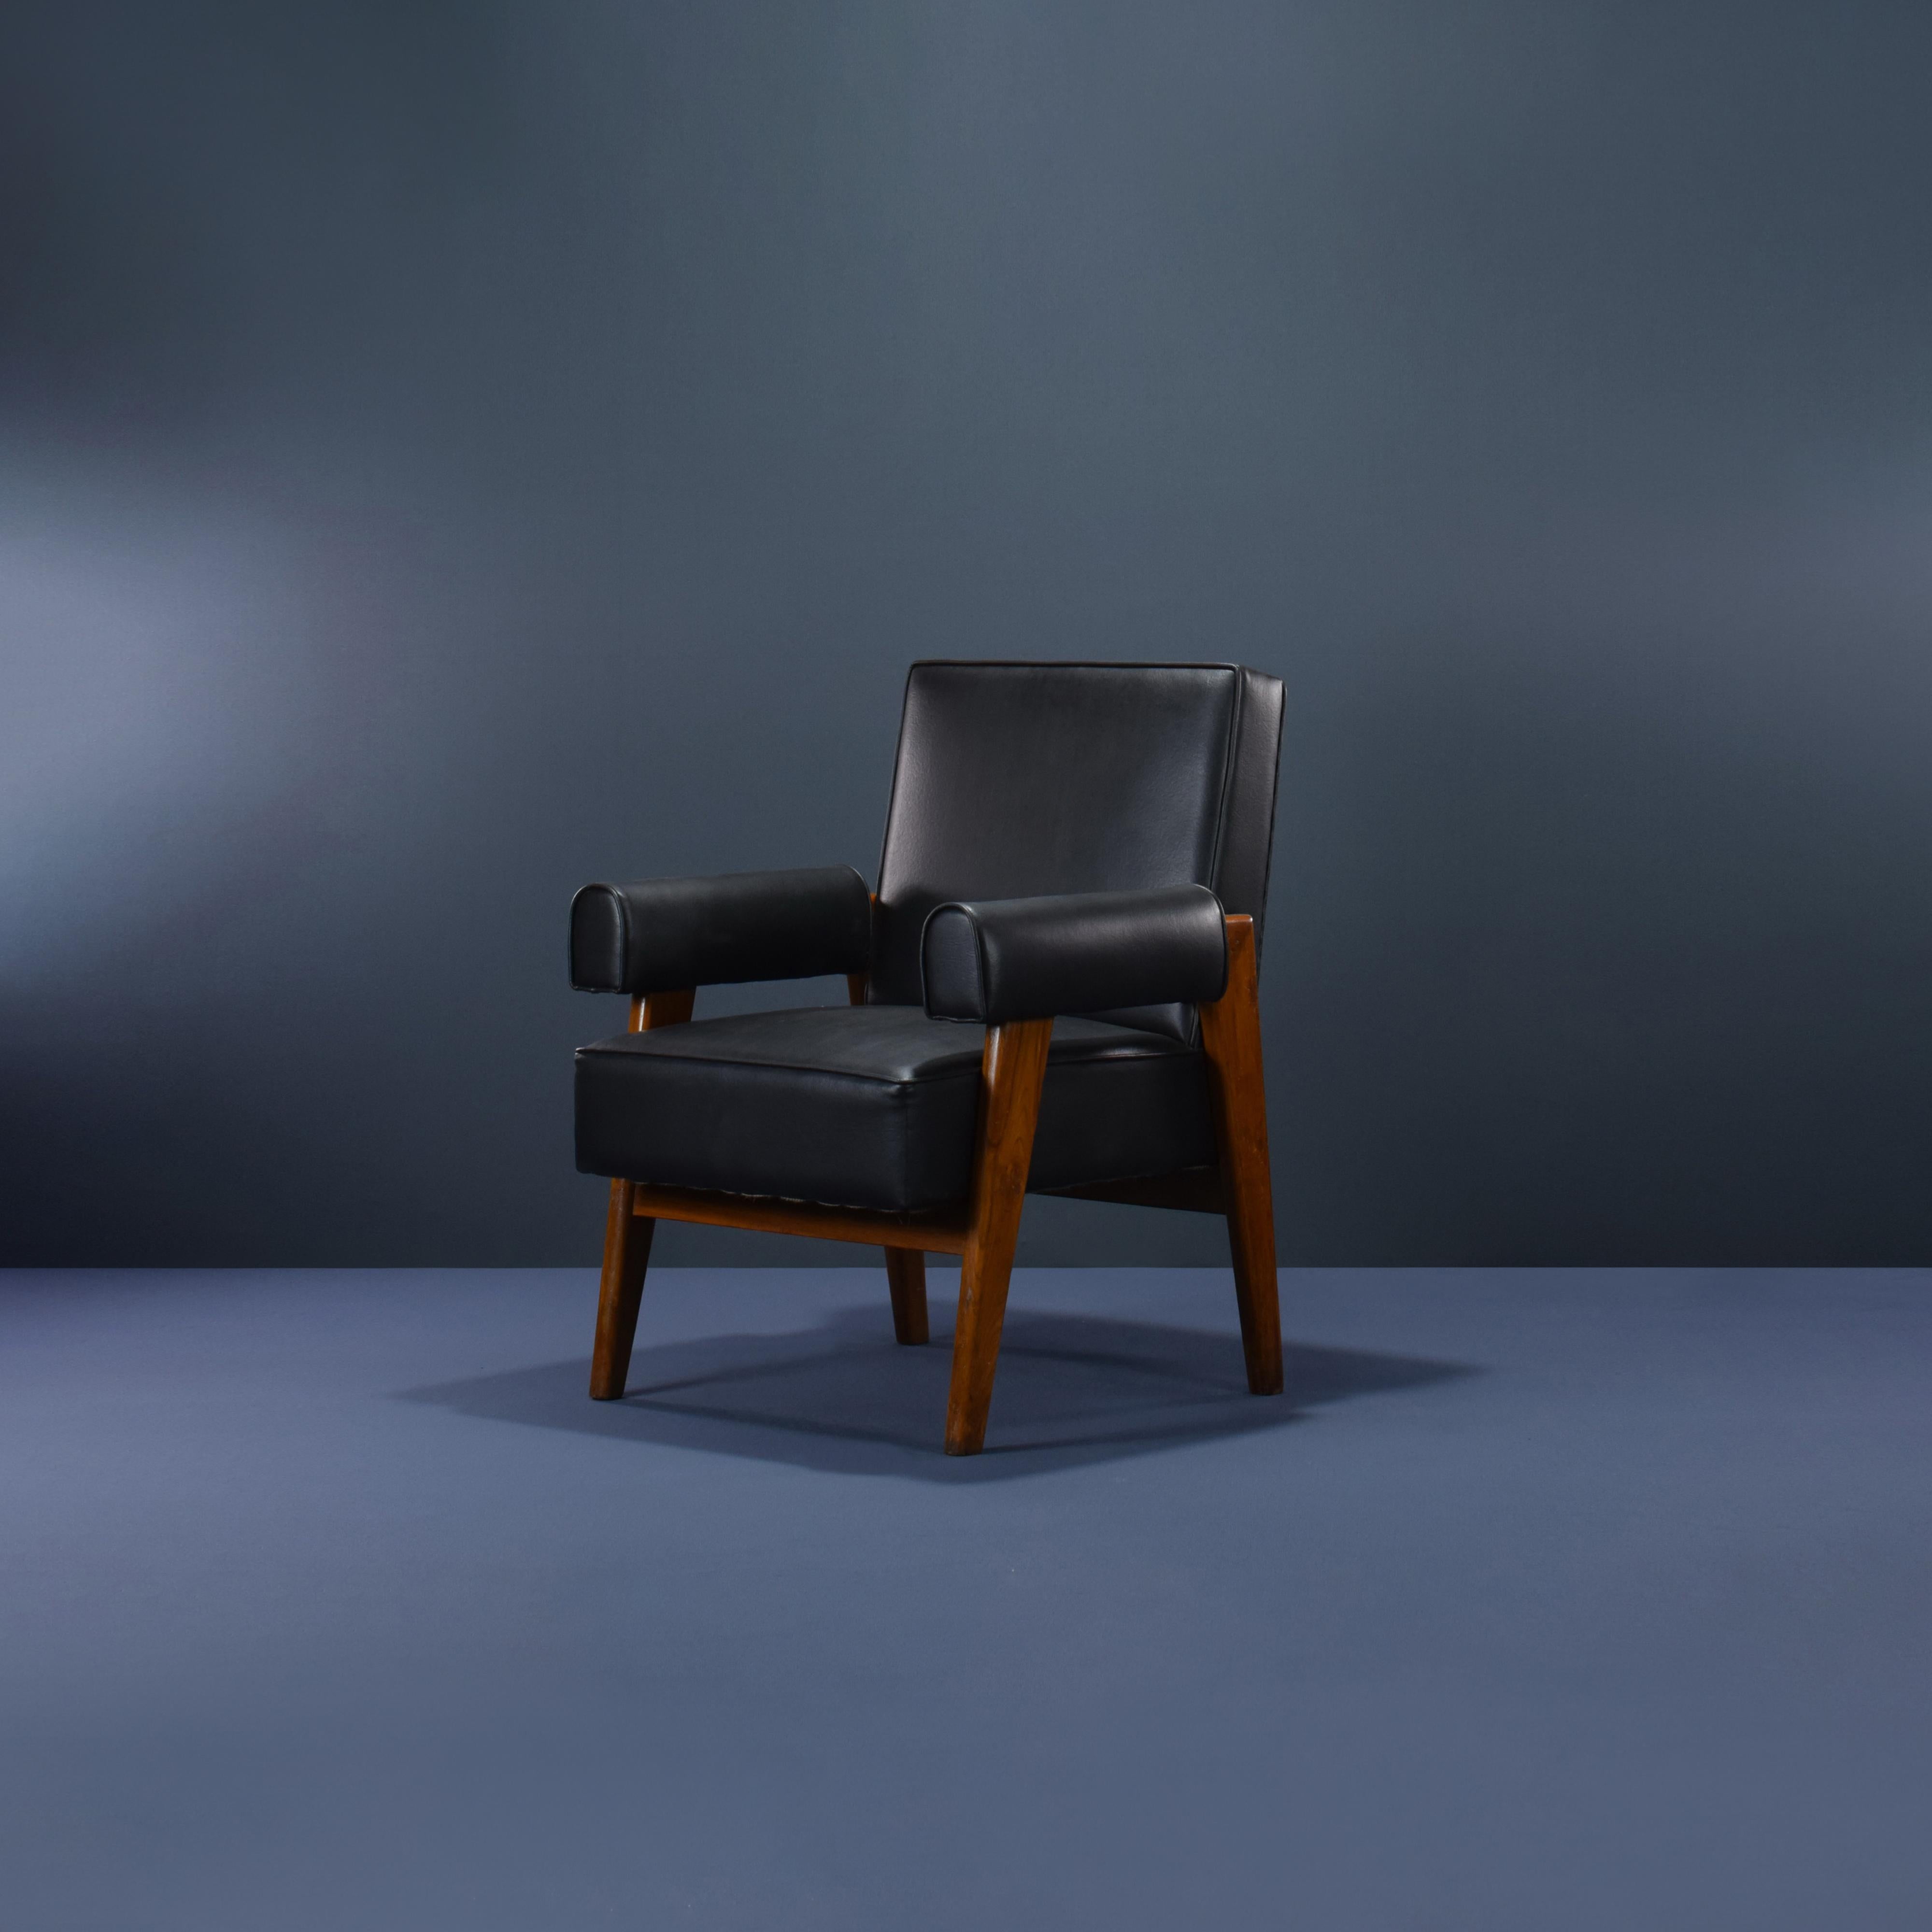 Diese beiden Stühle sind fantastische Stücke. Sie sind roh in ihrer Einfachheit, nichts ist zu viel und doch fehlt nichts. Wir können jede Art von Polstermöbel in jeder Farbe und jedem Stoff herstellen.
Die Stühle sind seltene Exemplare und